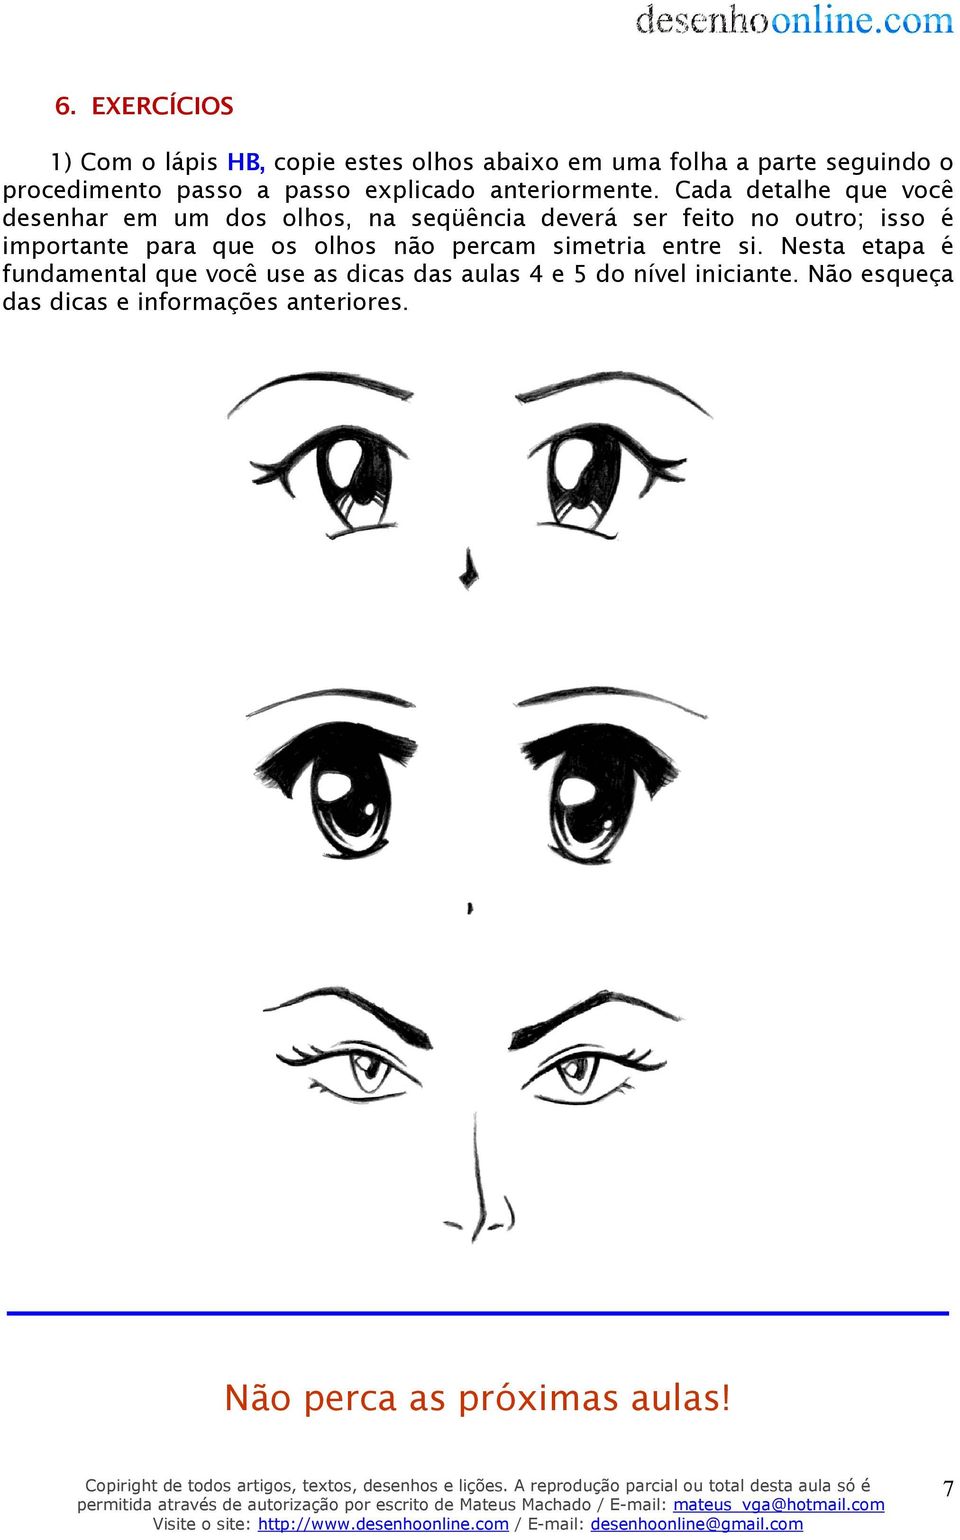 Cada detalhe que você desenhar em um dos olhos, na seqüência deverá ser feito no outro; isso é importante para que